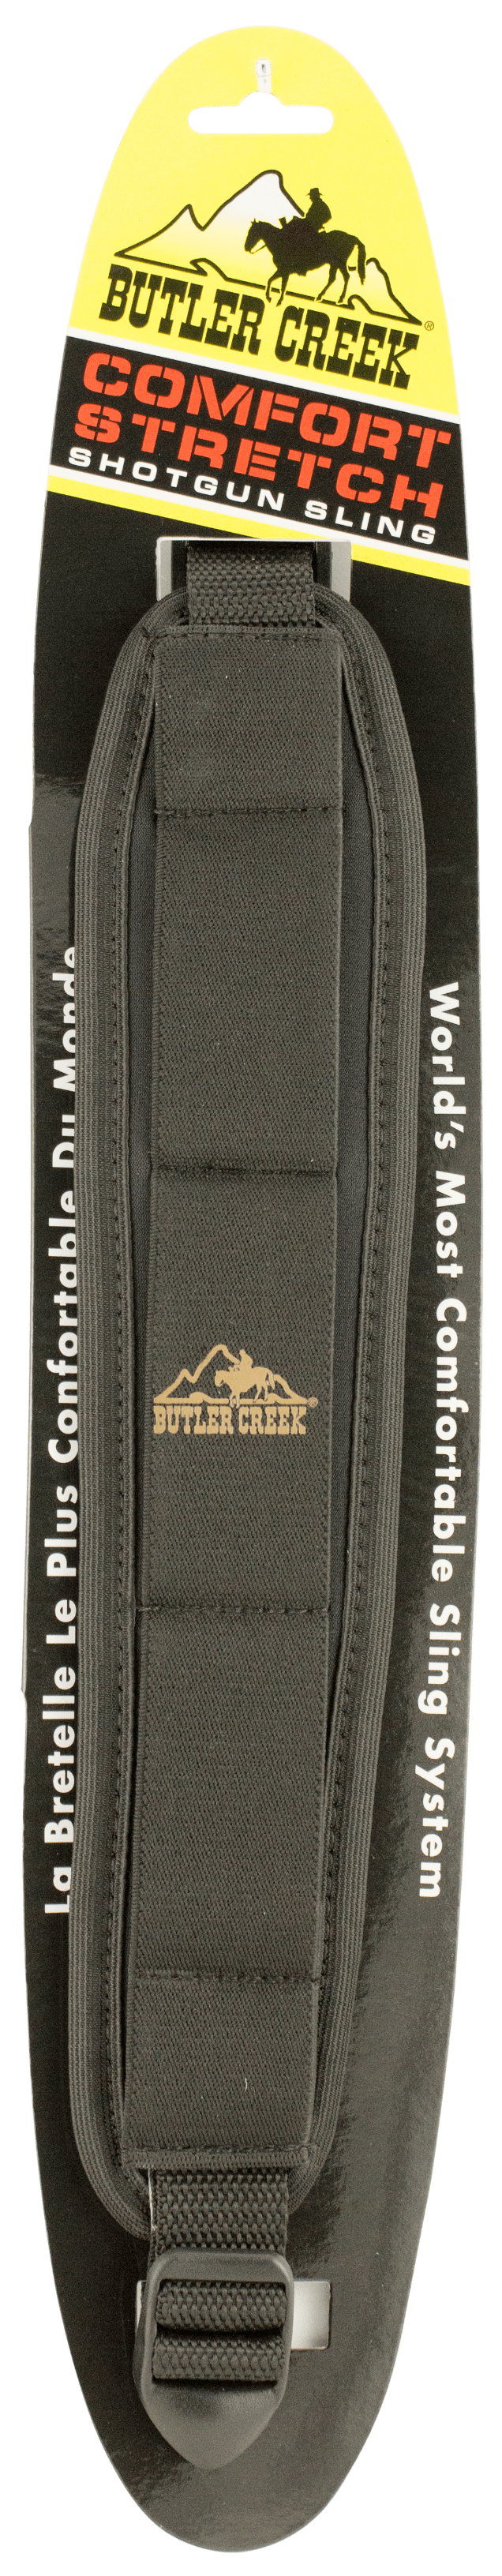 Butler Creek Butler Cr. Stretch Shotgun - Sling Neoprene Black Slings